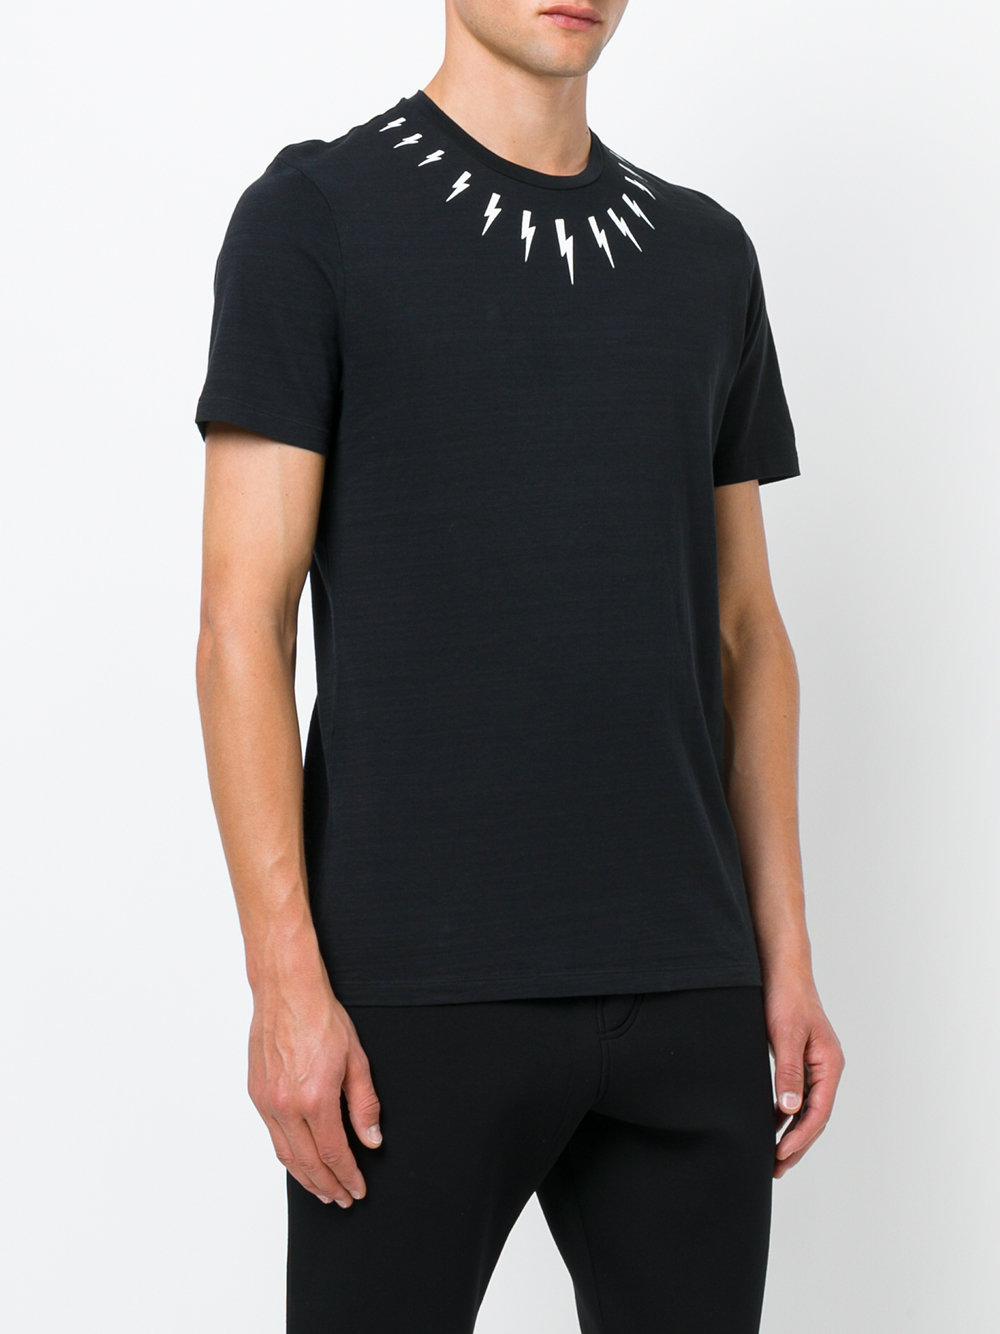 Neil Barrett Lightning Bolt Collar T-shirt in Black for Men